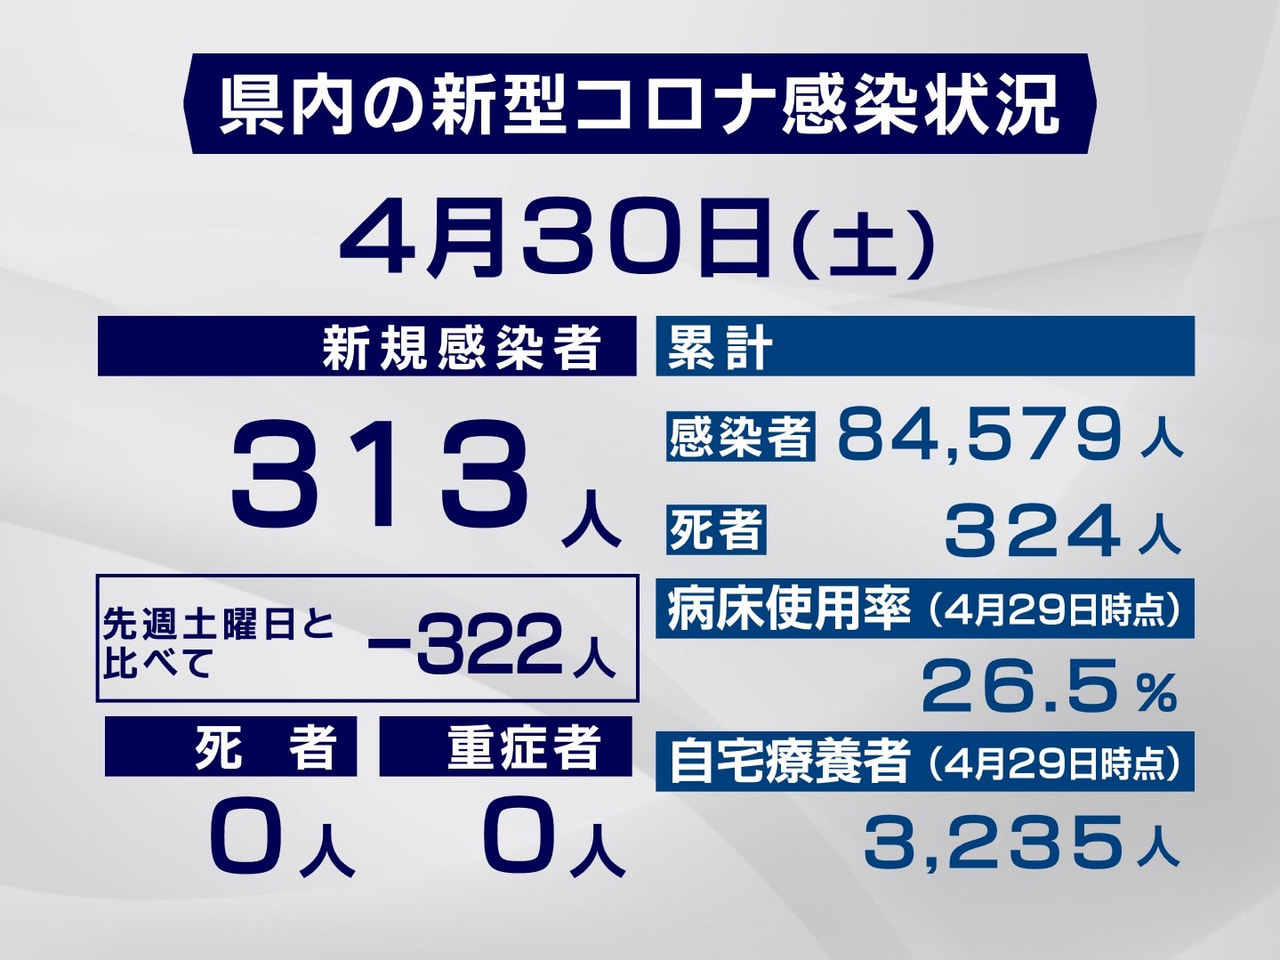 岐阜県は３０日、新型コロナウイルスの新規感染者が３１３人確認されたと発表しました...